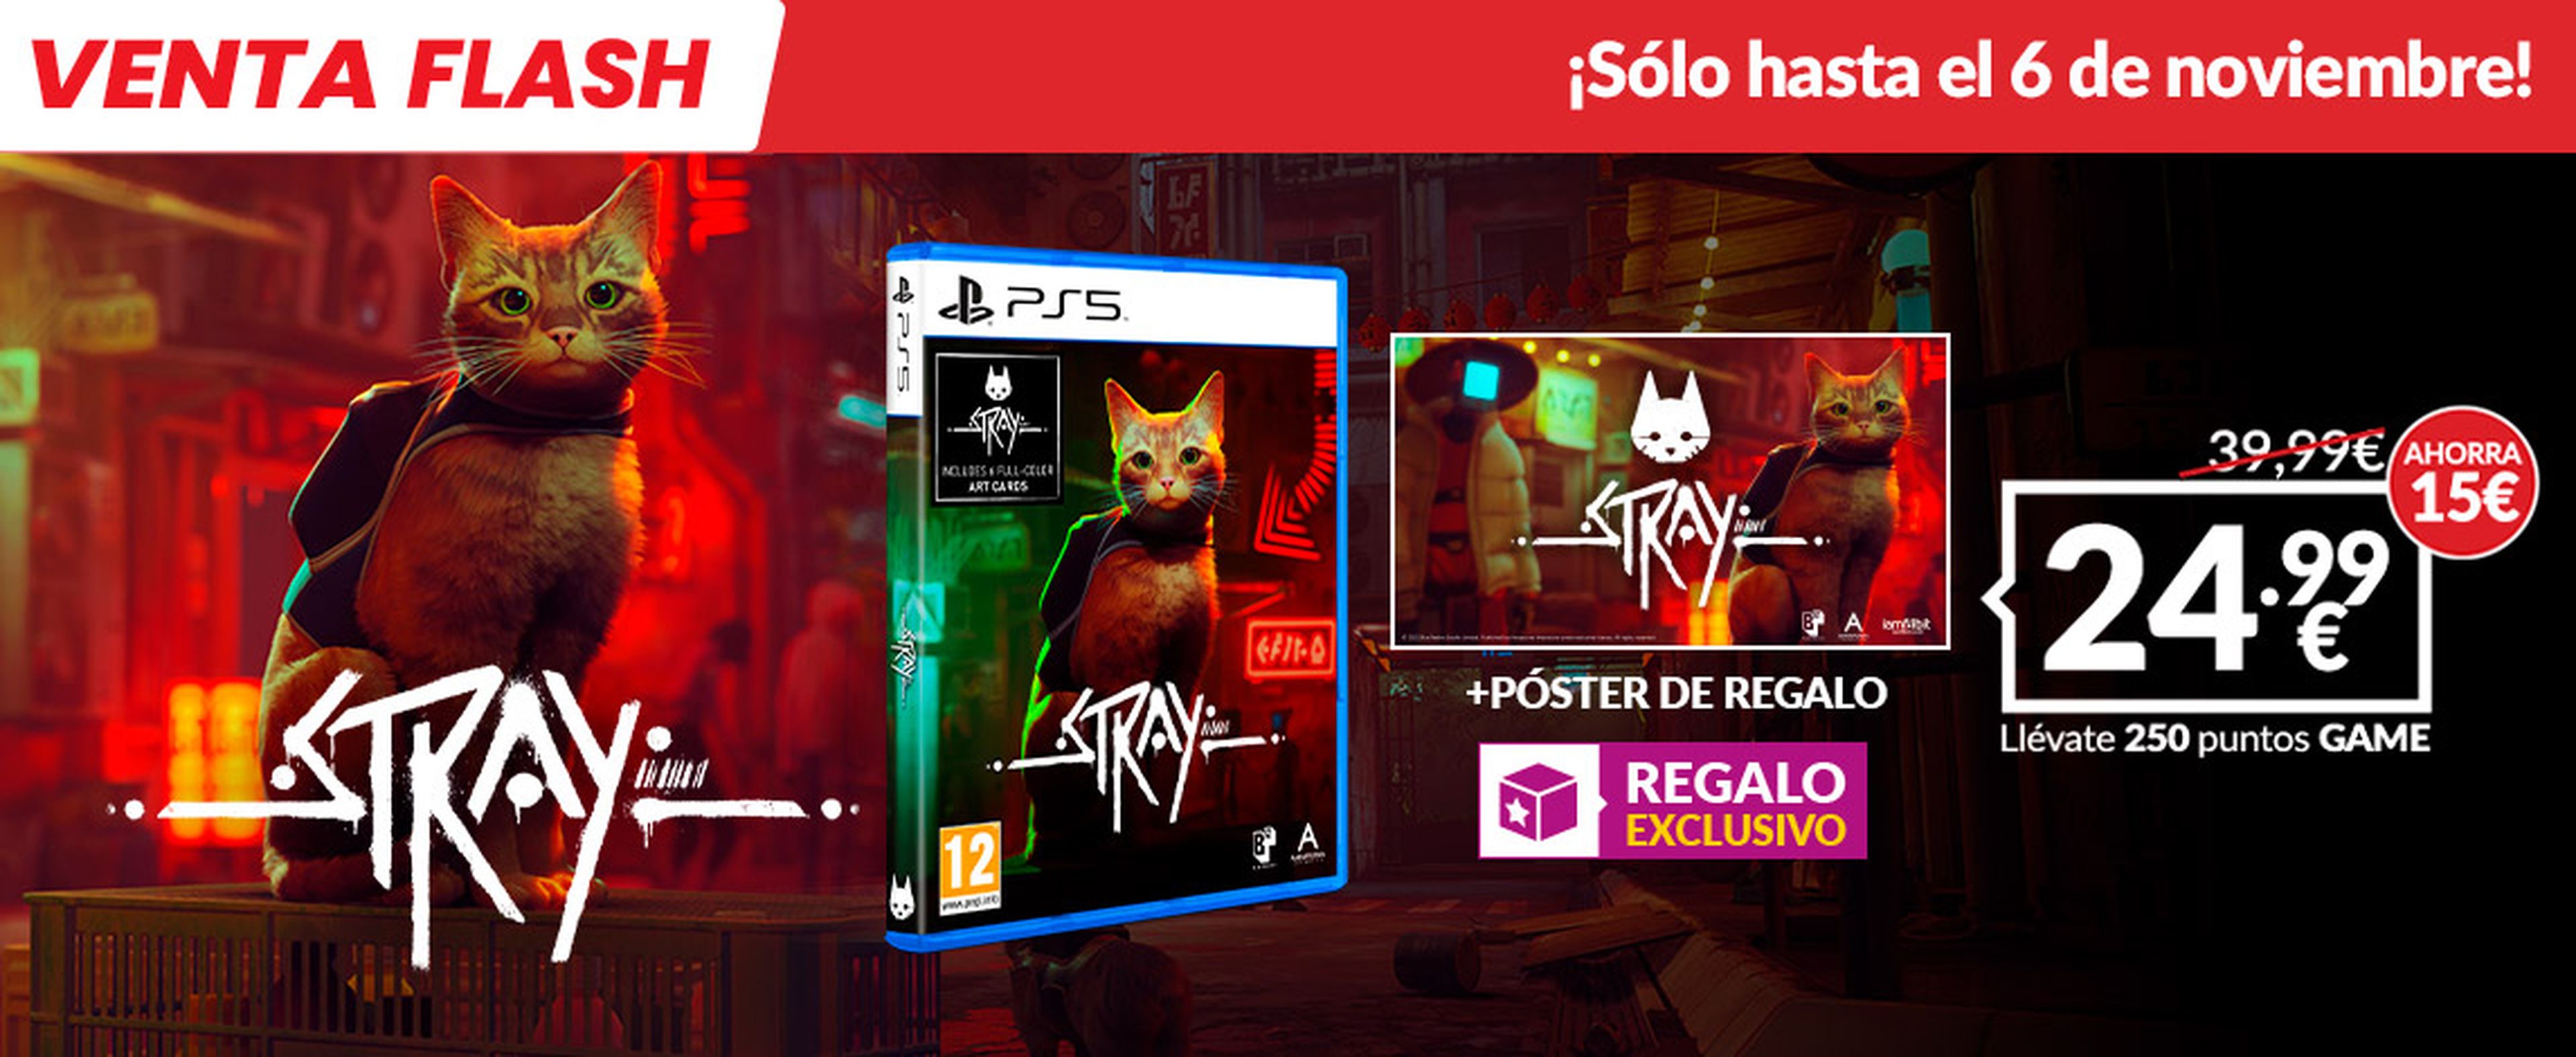 Stray, el juego de PS5 protagonizado por un gato, ofrece nuevos